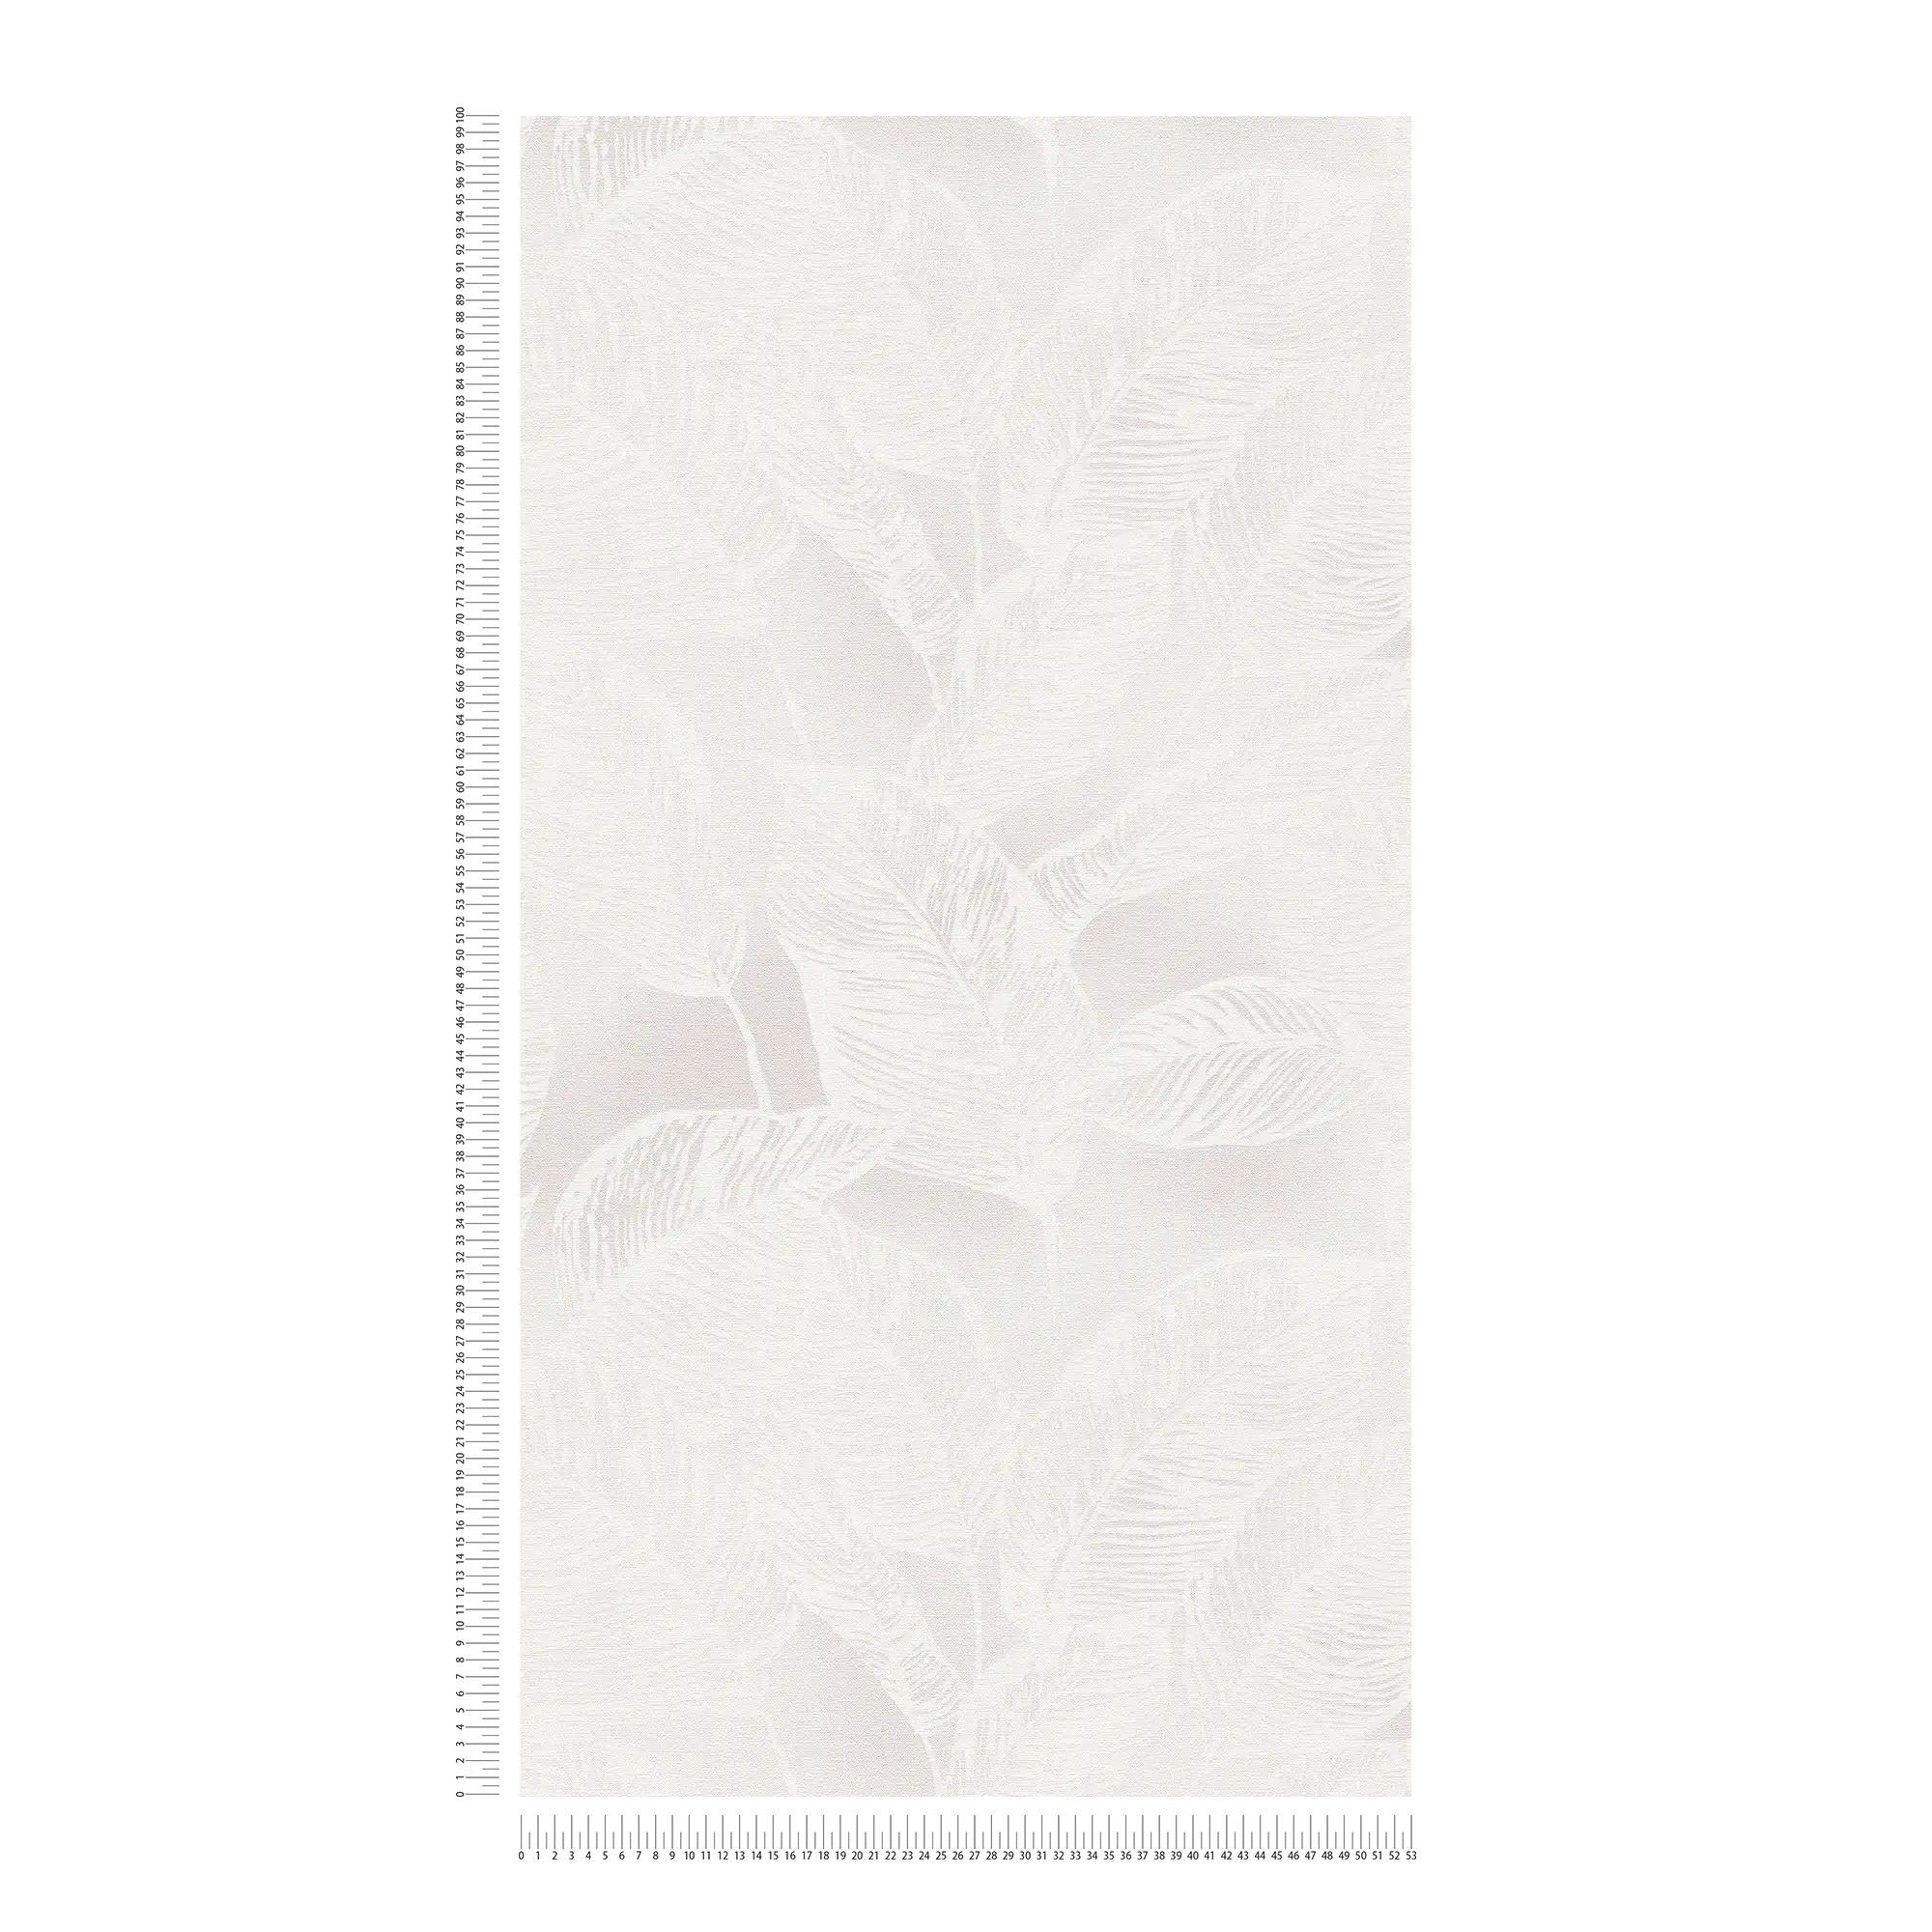             Vliesbehang met bladeren PVC-vrij - wit, grijs
        